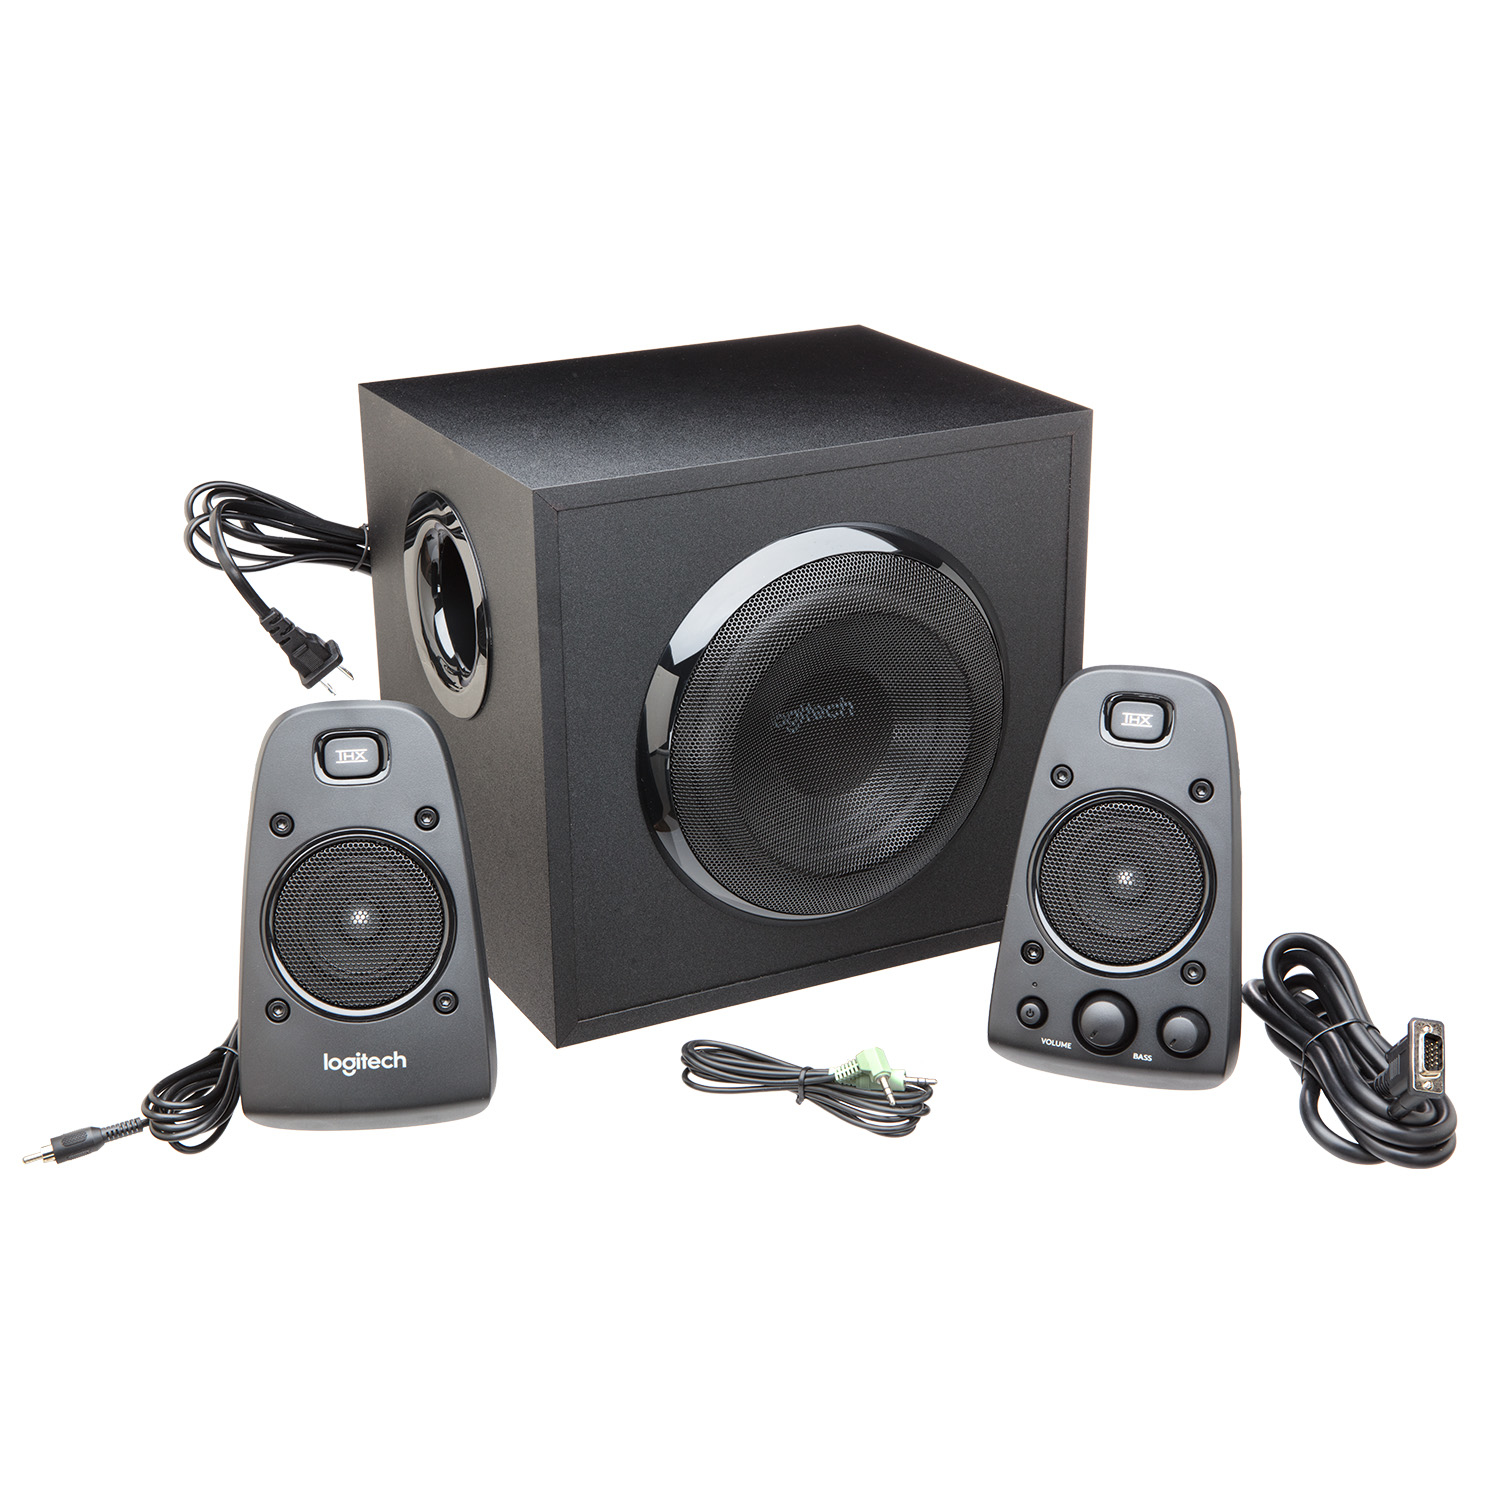 Logitech Speaker Z623 black retail